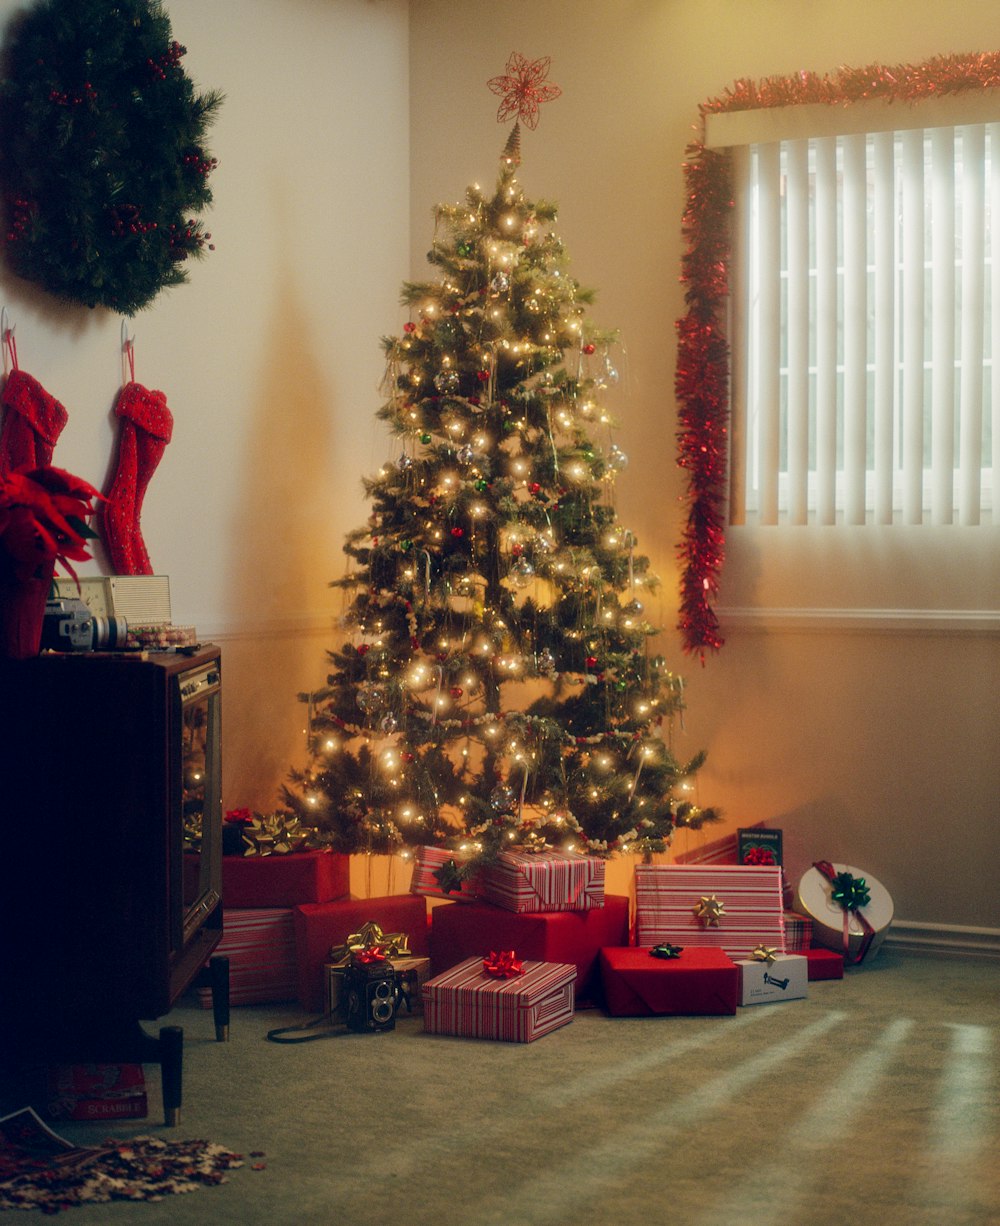 Ein Weihnachtsbaum mit Geschenken darunter vor einem Fenster